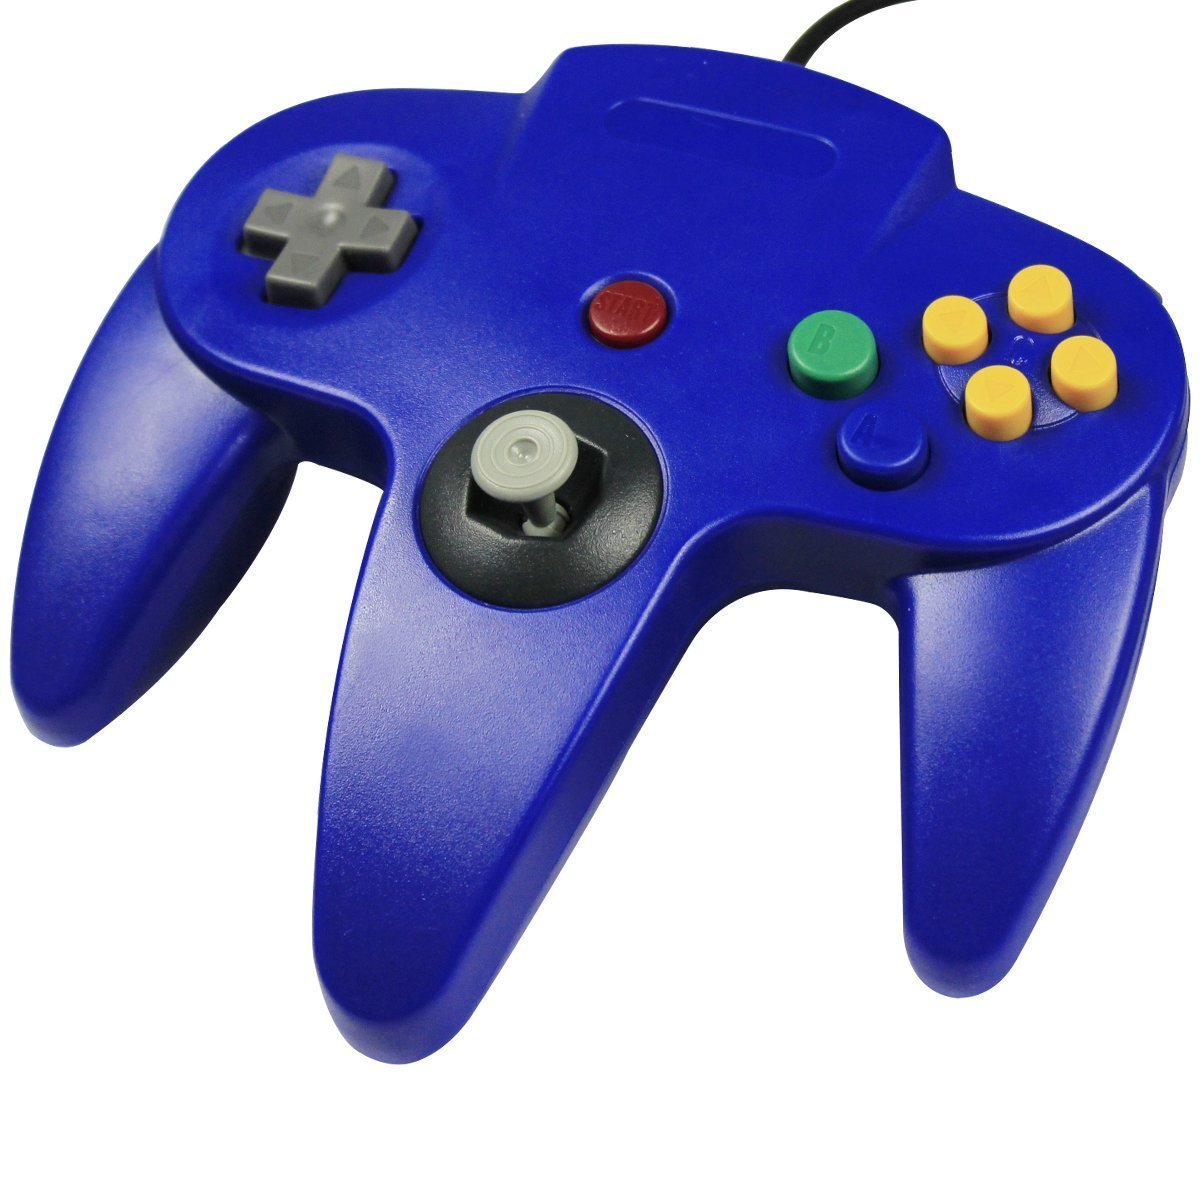 Nintendo 64 Controller Blue AKA Blue N64 Controller